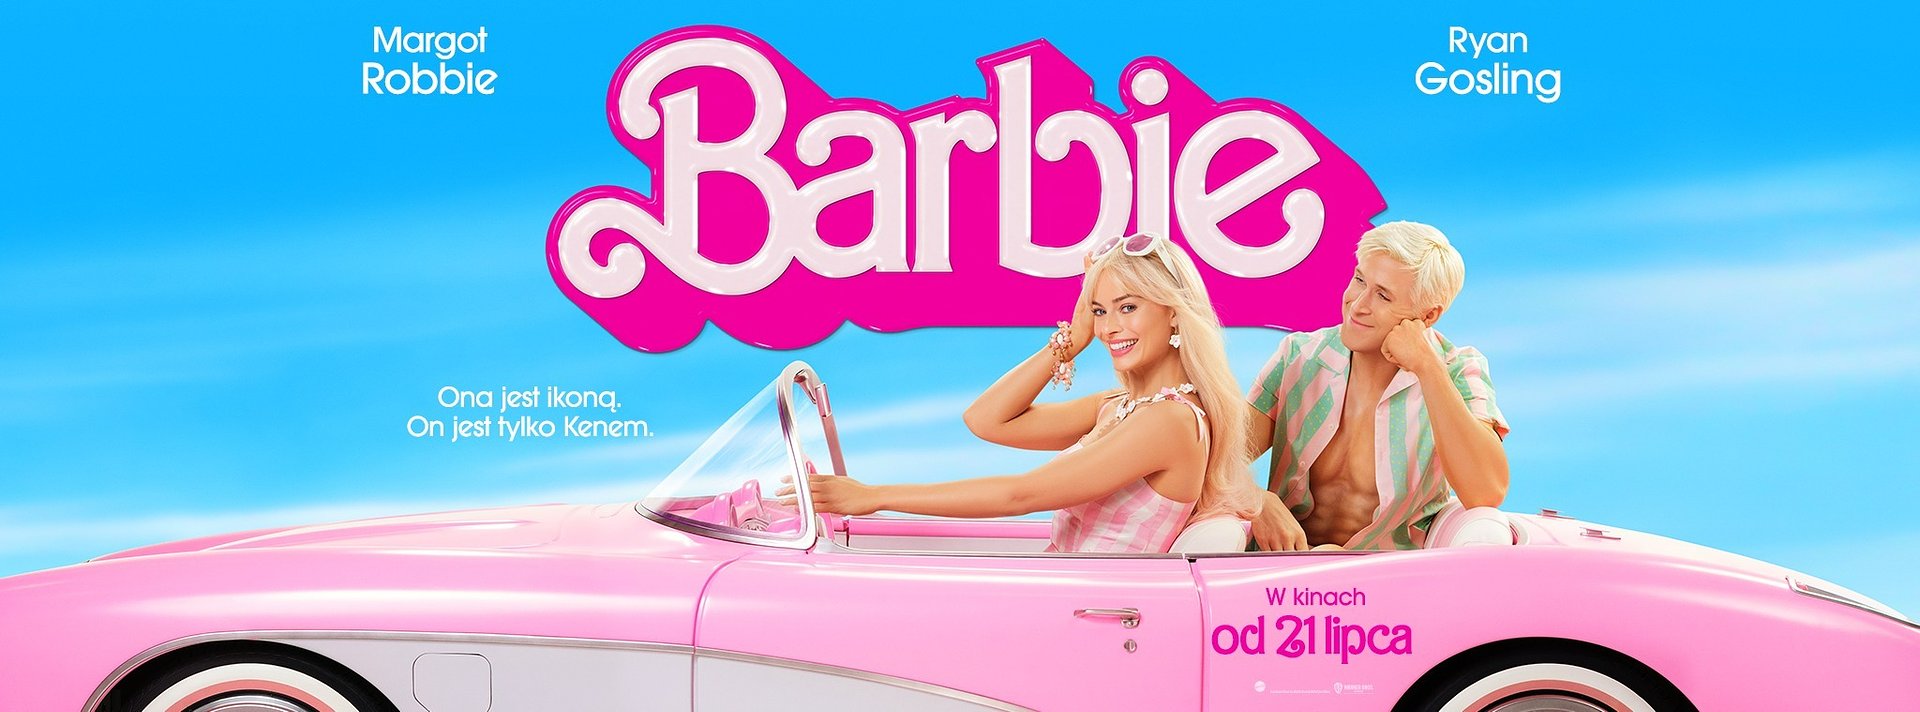 Prawie pół miliona widzów w Polsce zobaczyło "Barbie" w weekend otwarcia